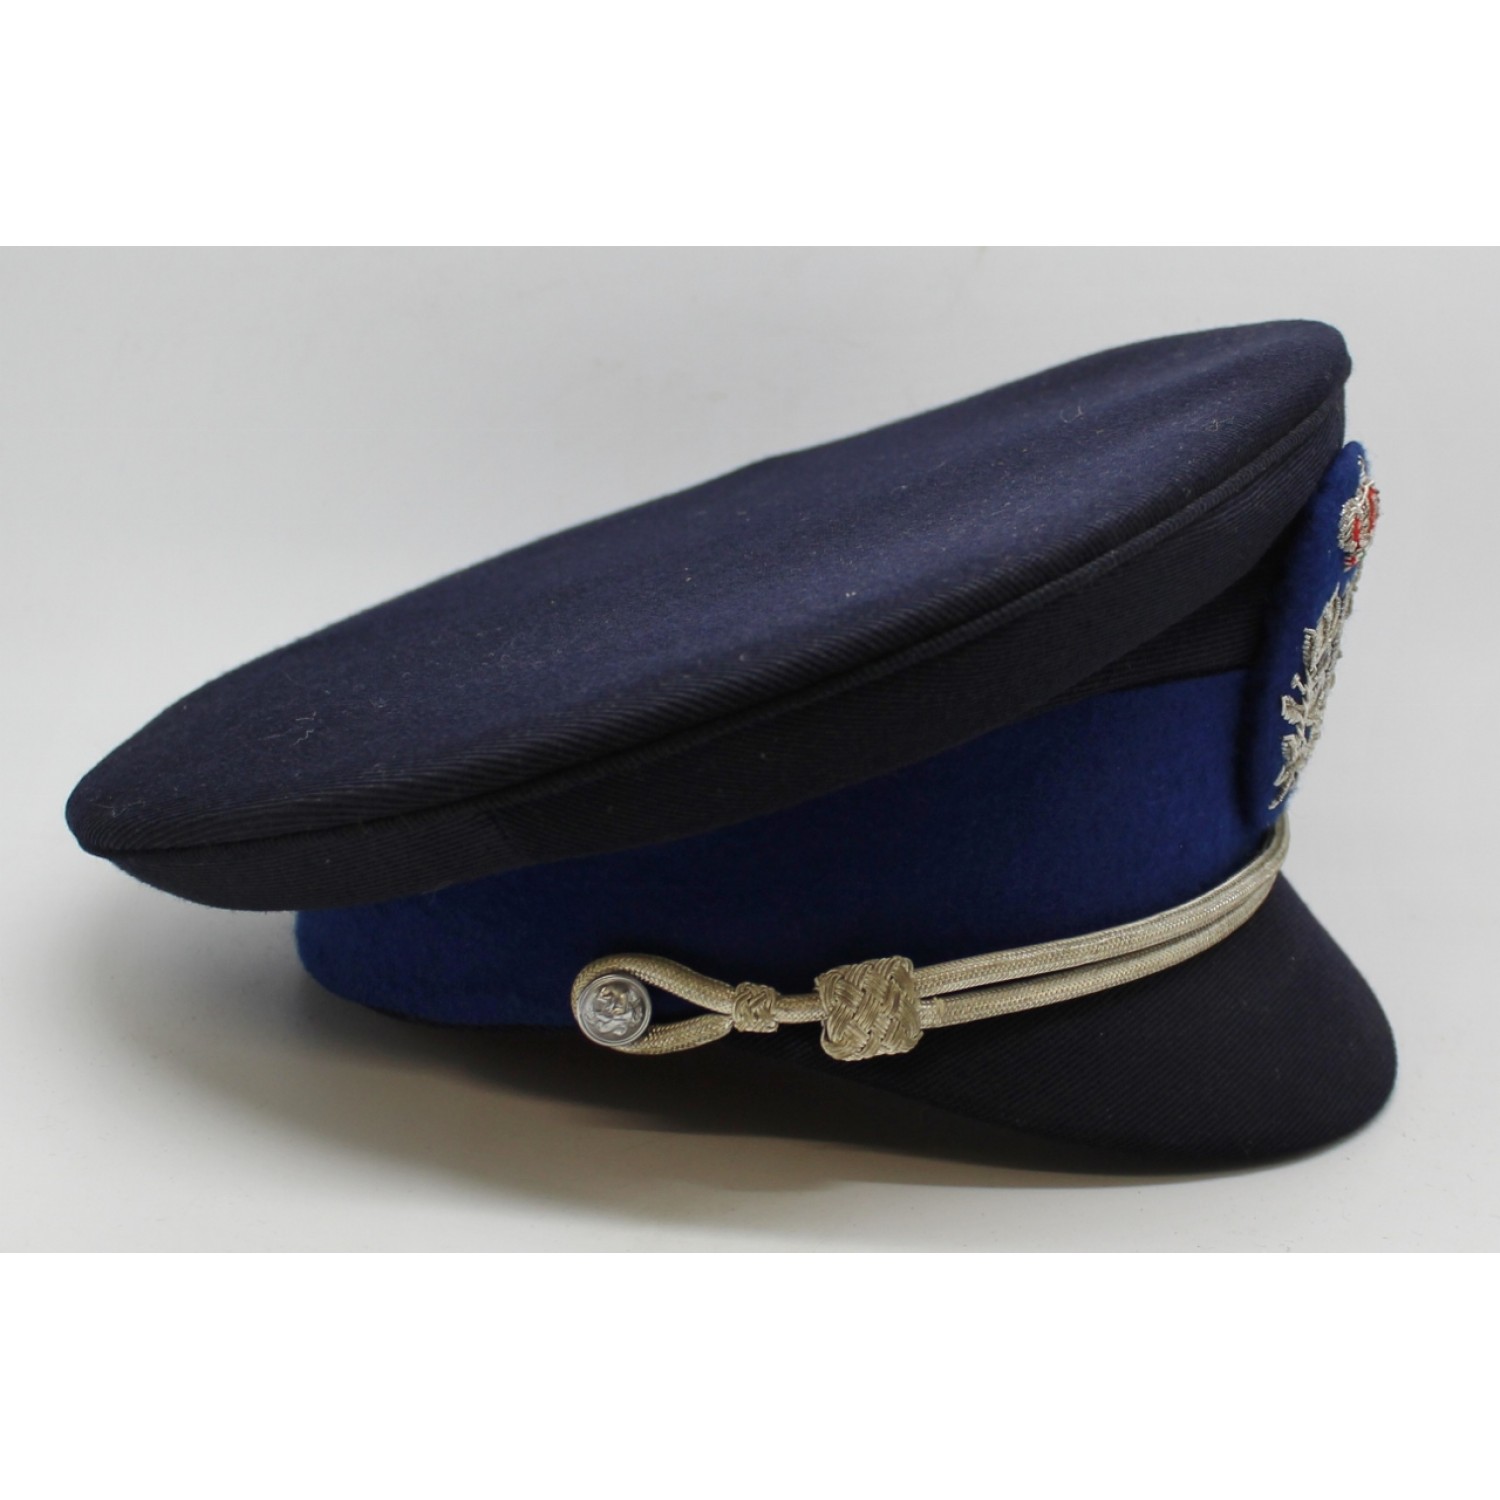 Belgium Police Cap